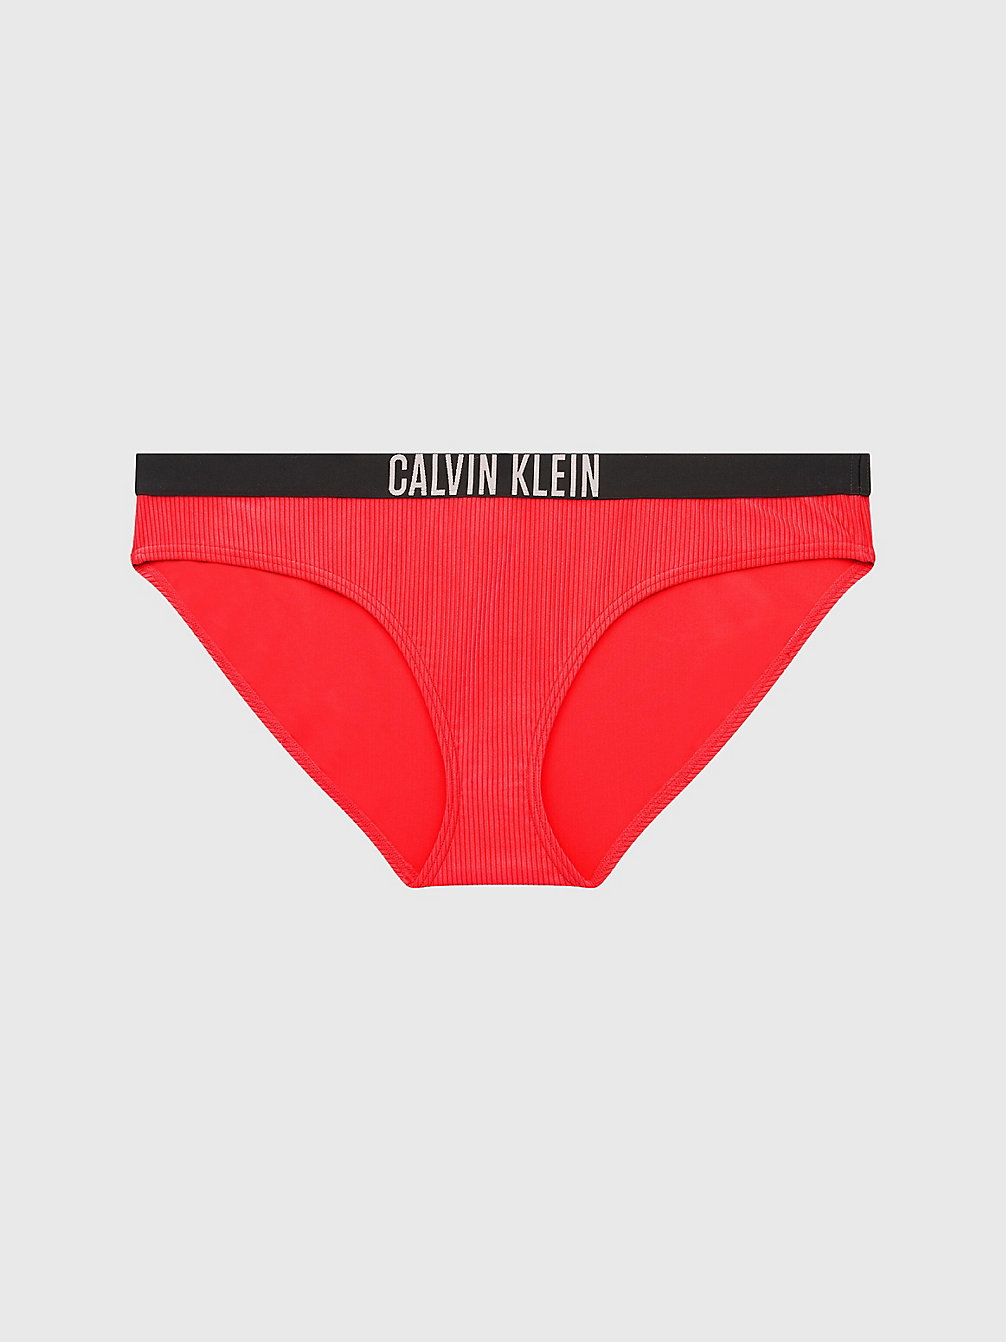 CORAL CRUSH Bikinihose In Großen Größen - Intense Power undefined Damen Calvin Klein